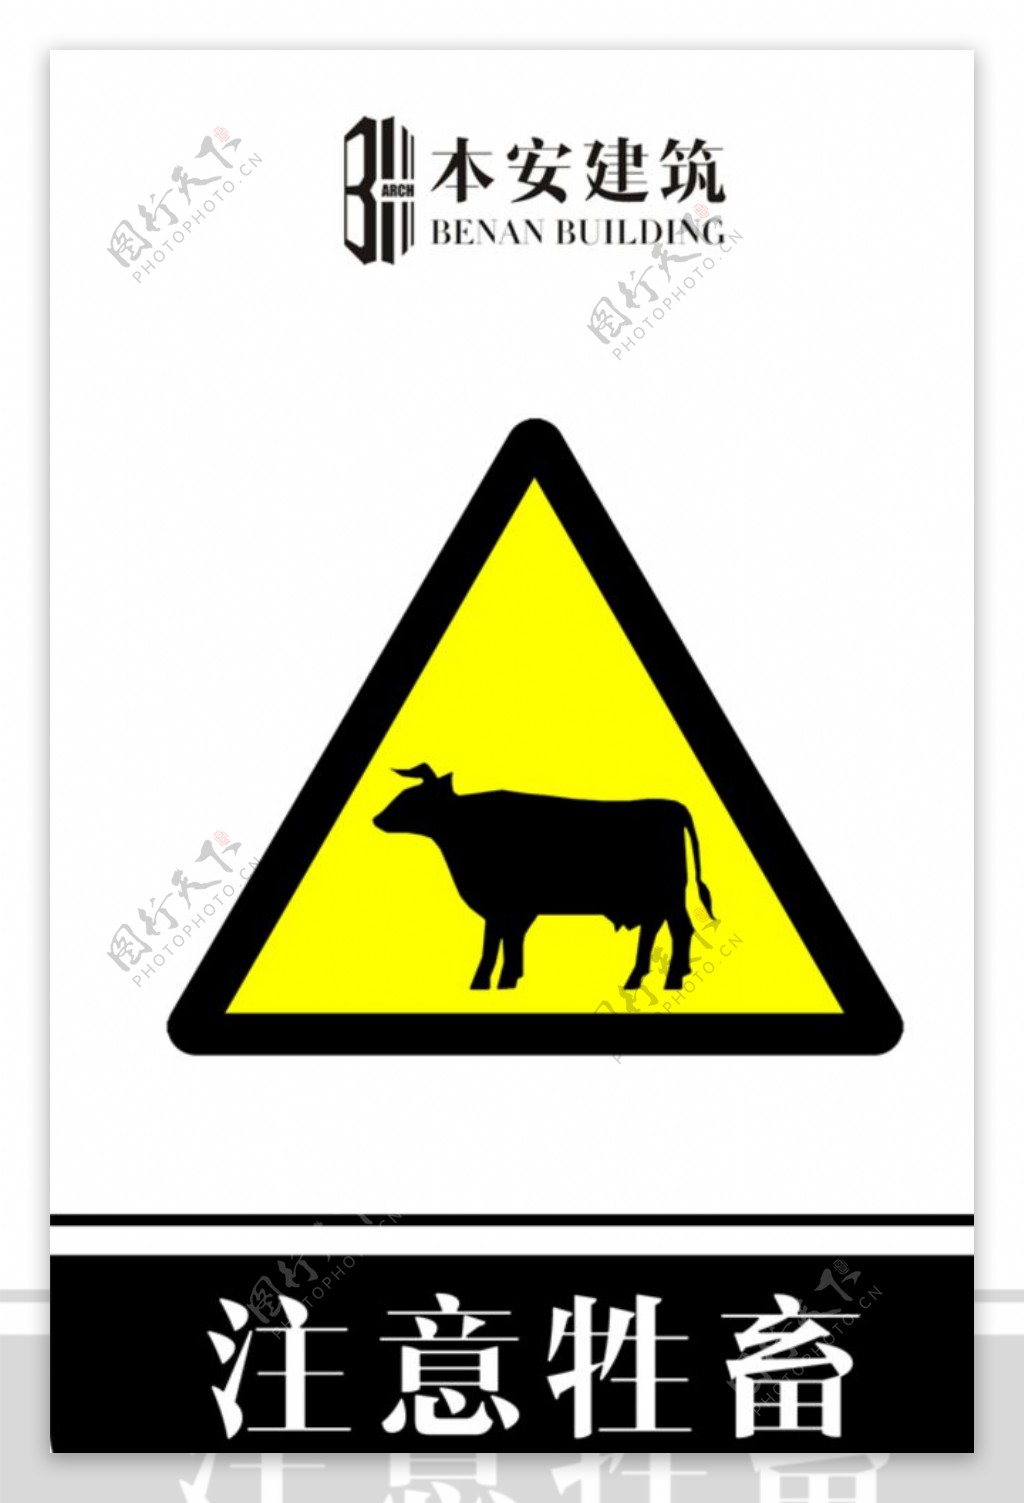 注意牲畜交通安全标识